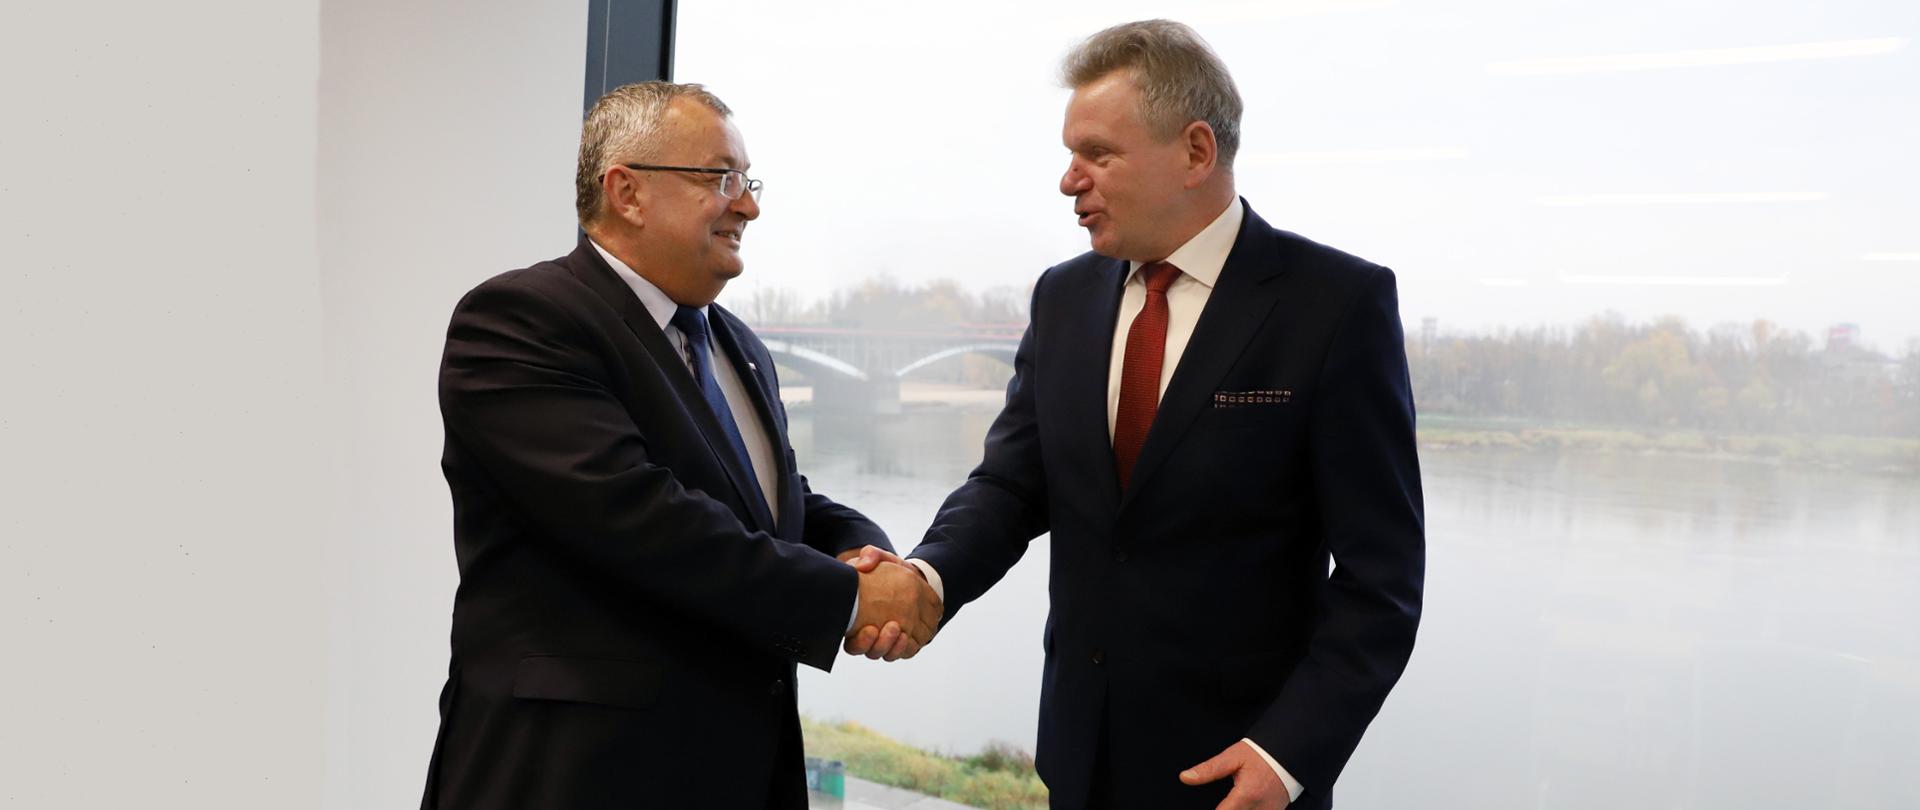 Minister infrastruktury Andrzej Adamczyk spotkał się z Jaroslavem Narkevičem, ministrem transportu i łączności Republiki Litewskiej